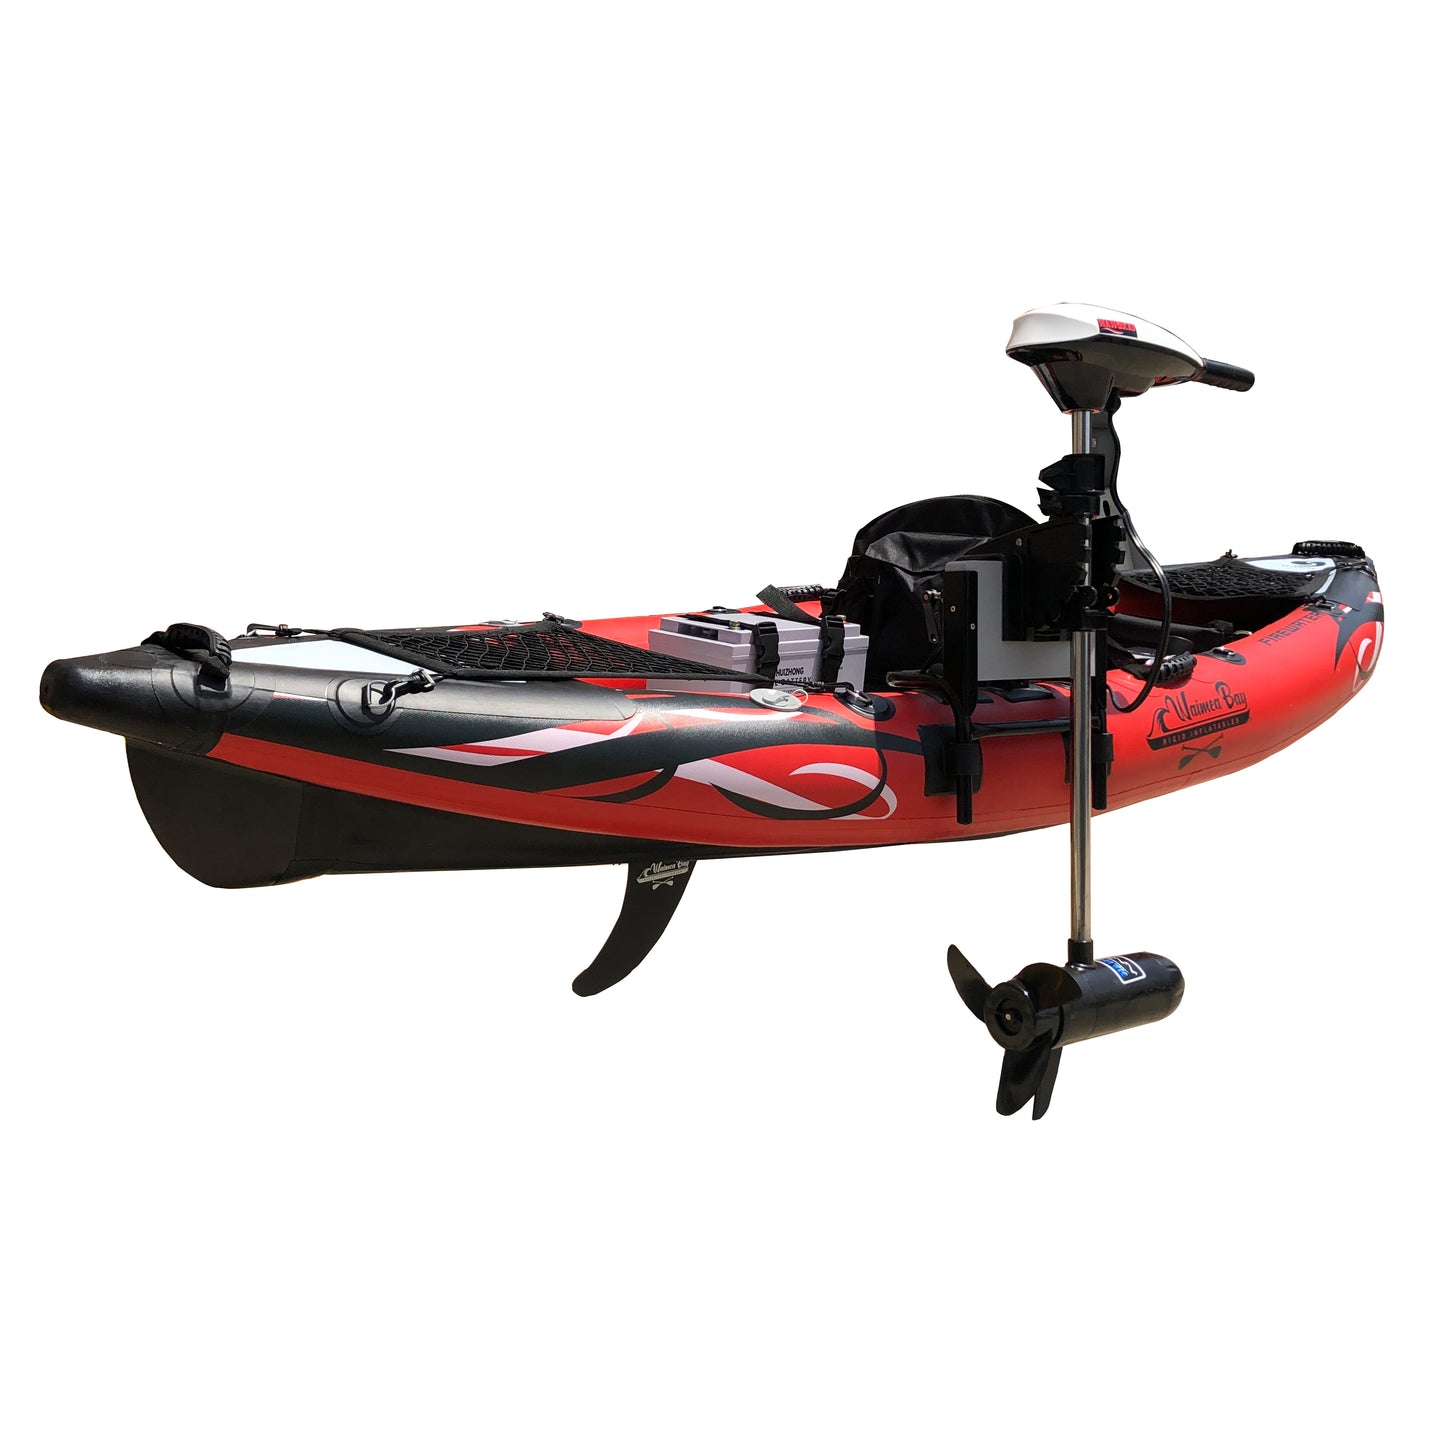 Firewater Inflatable Kayak